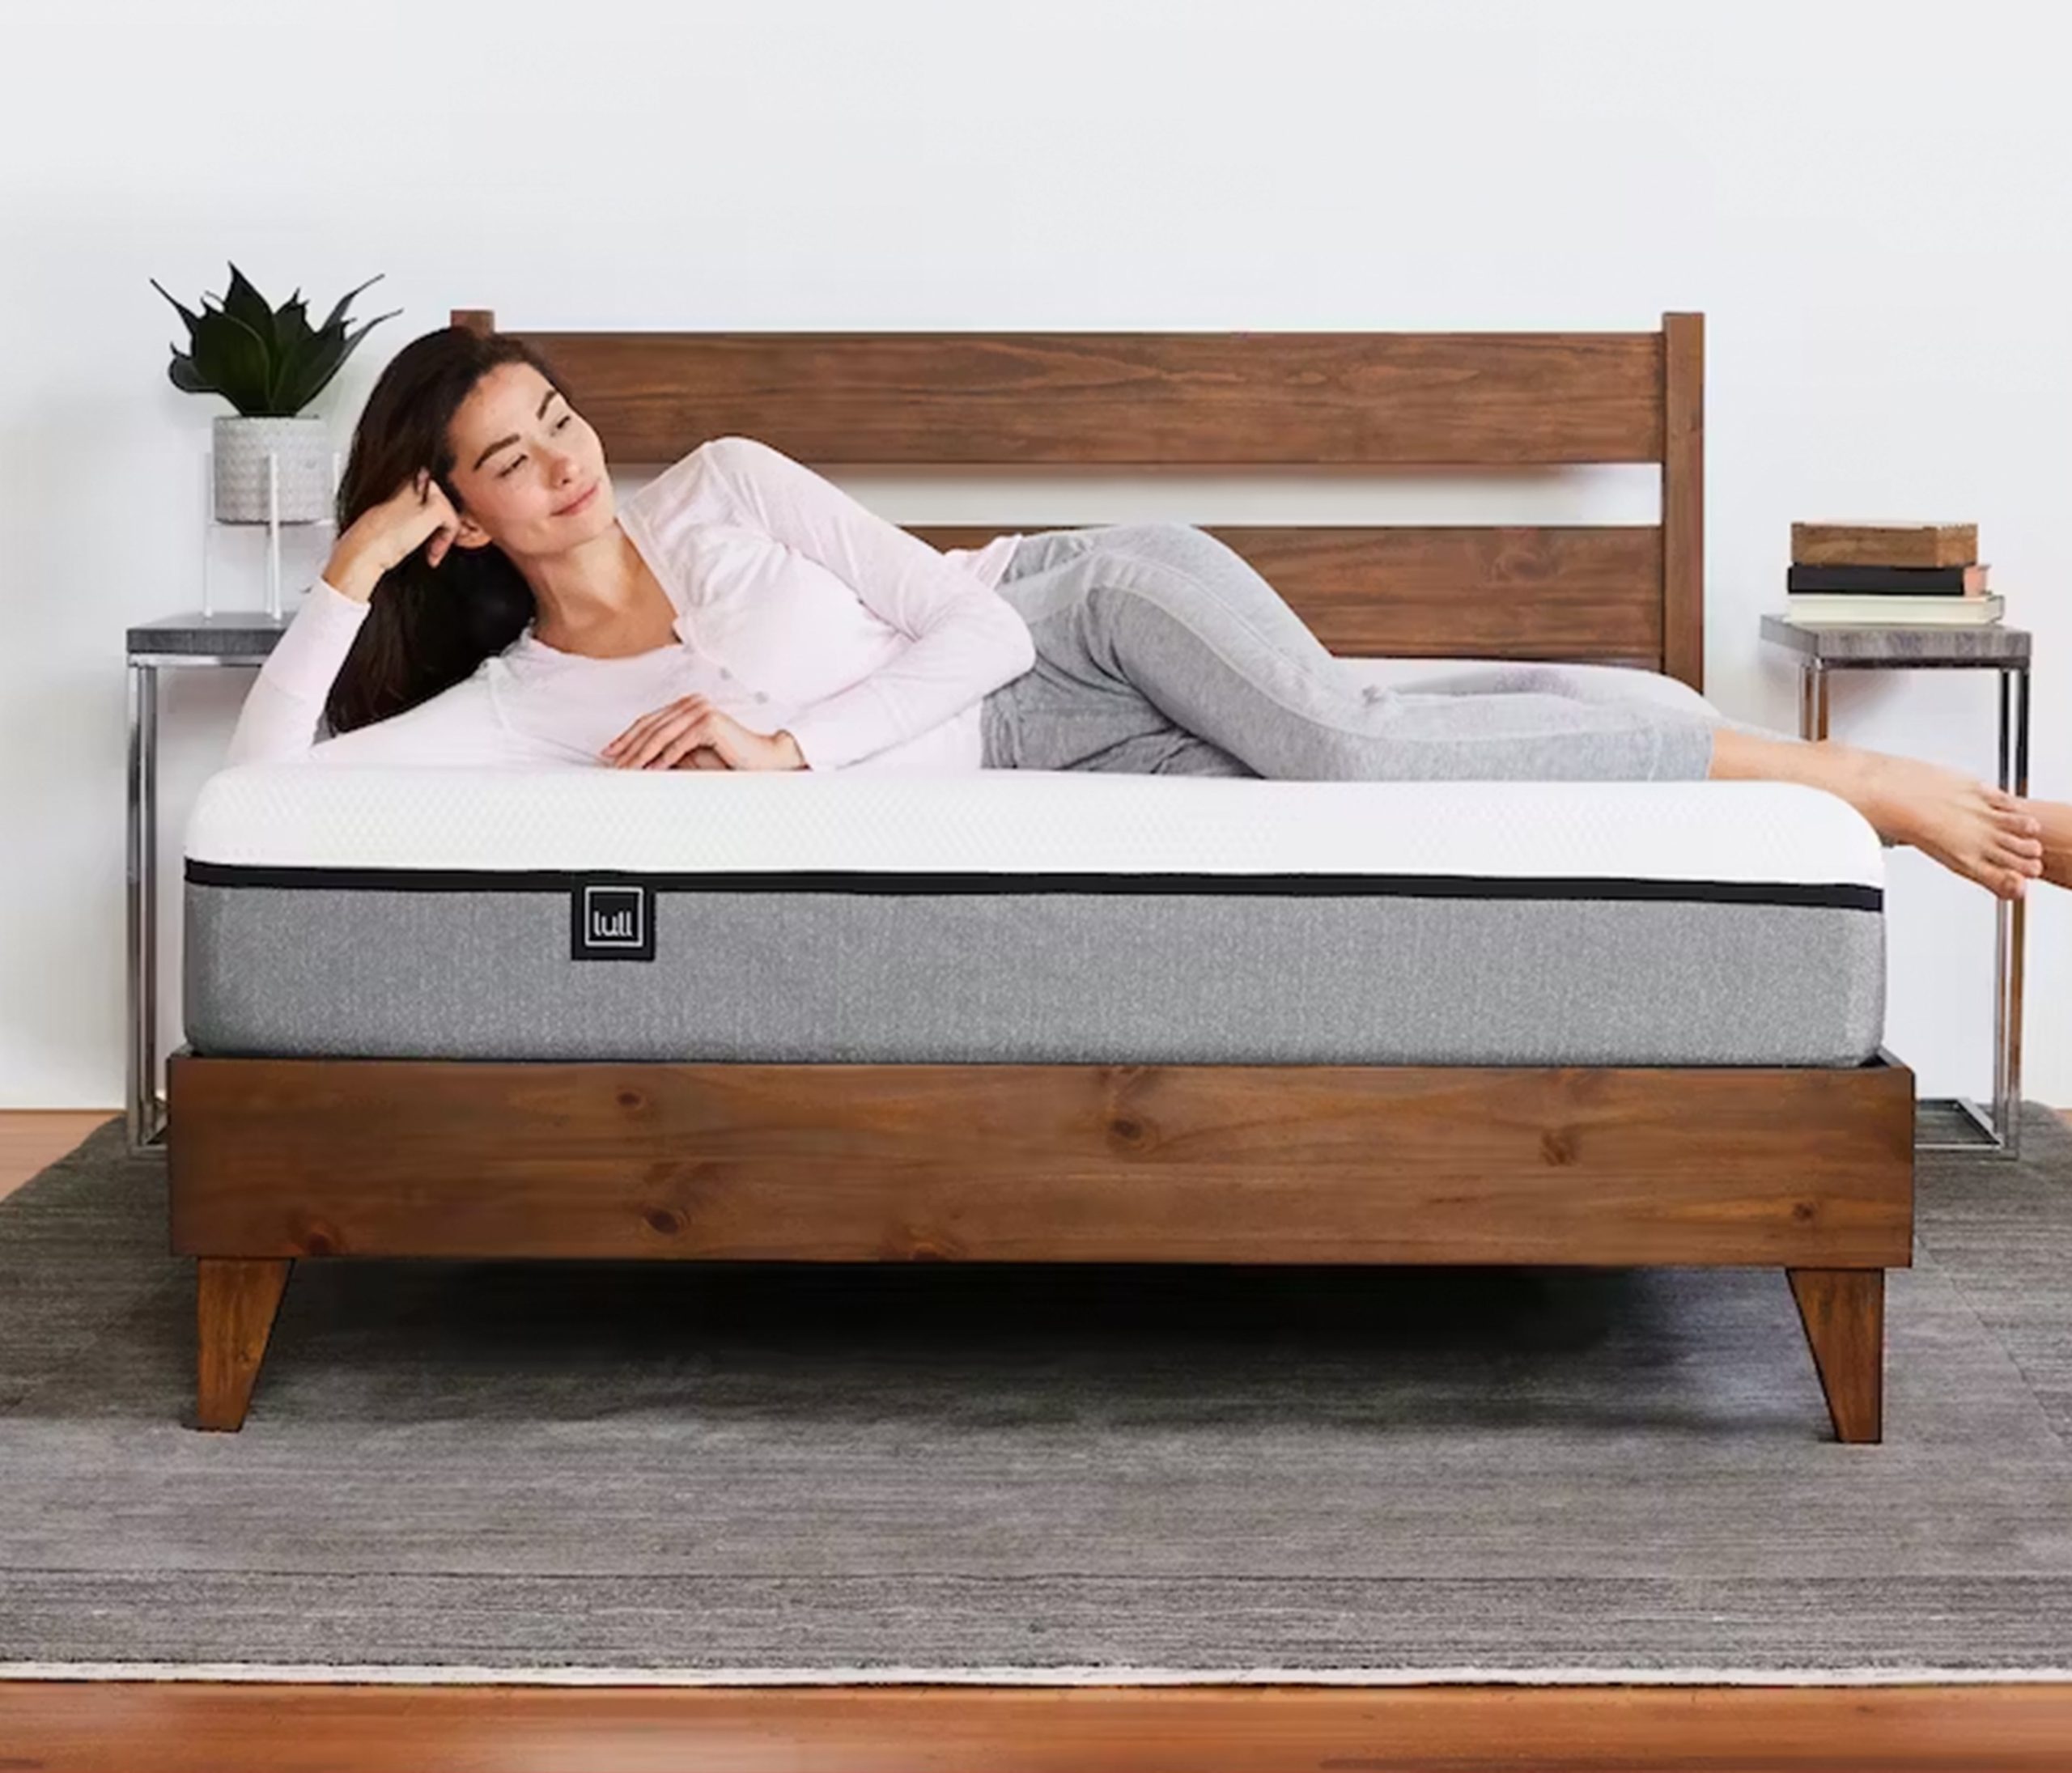 lull mattress review